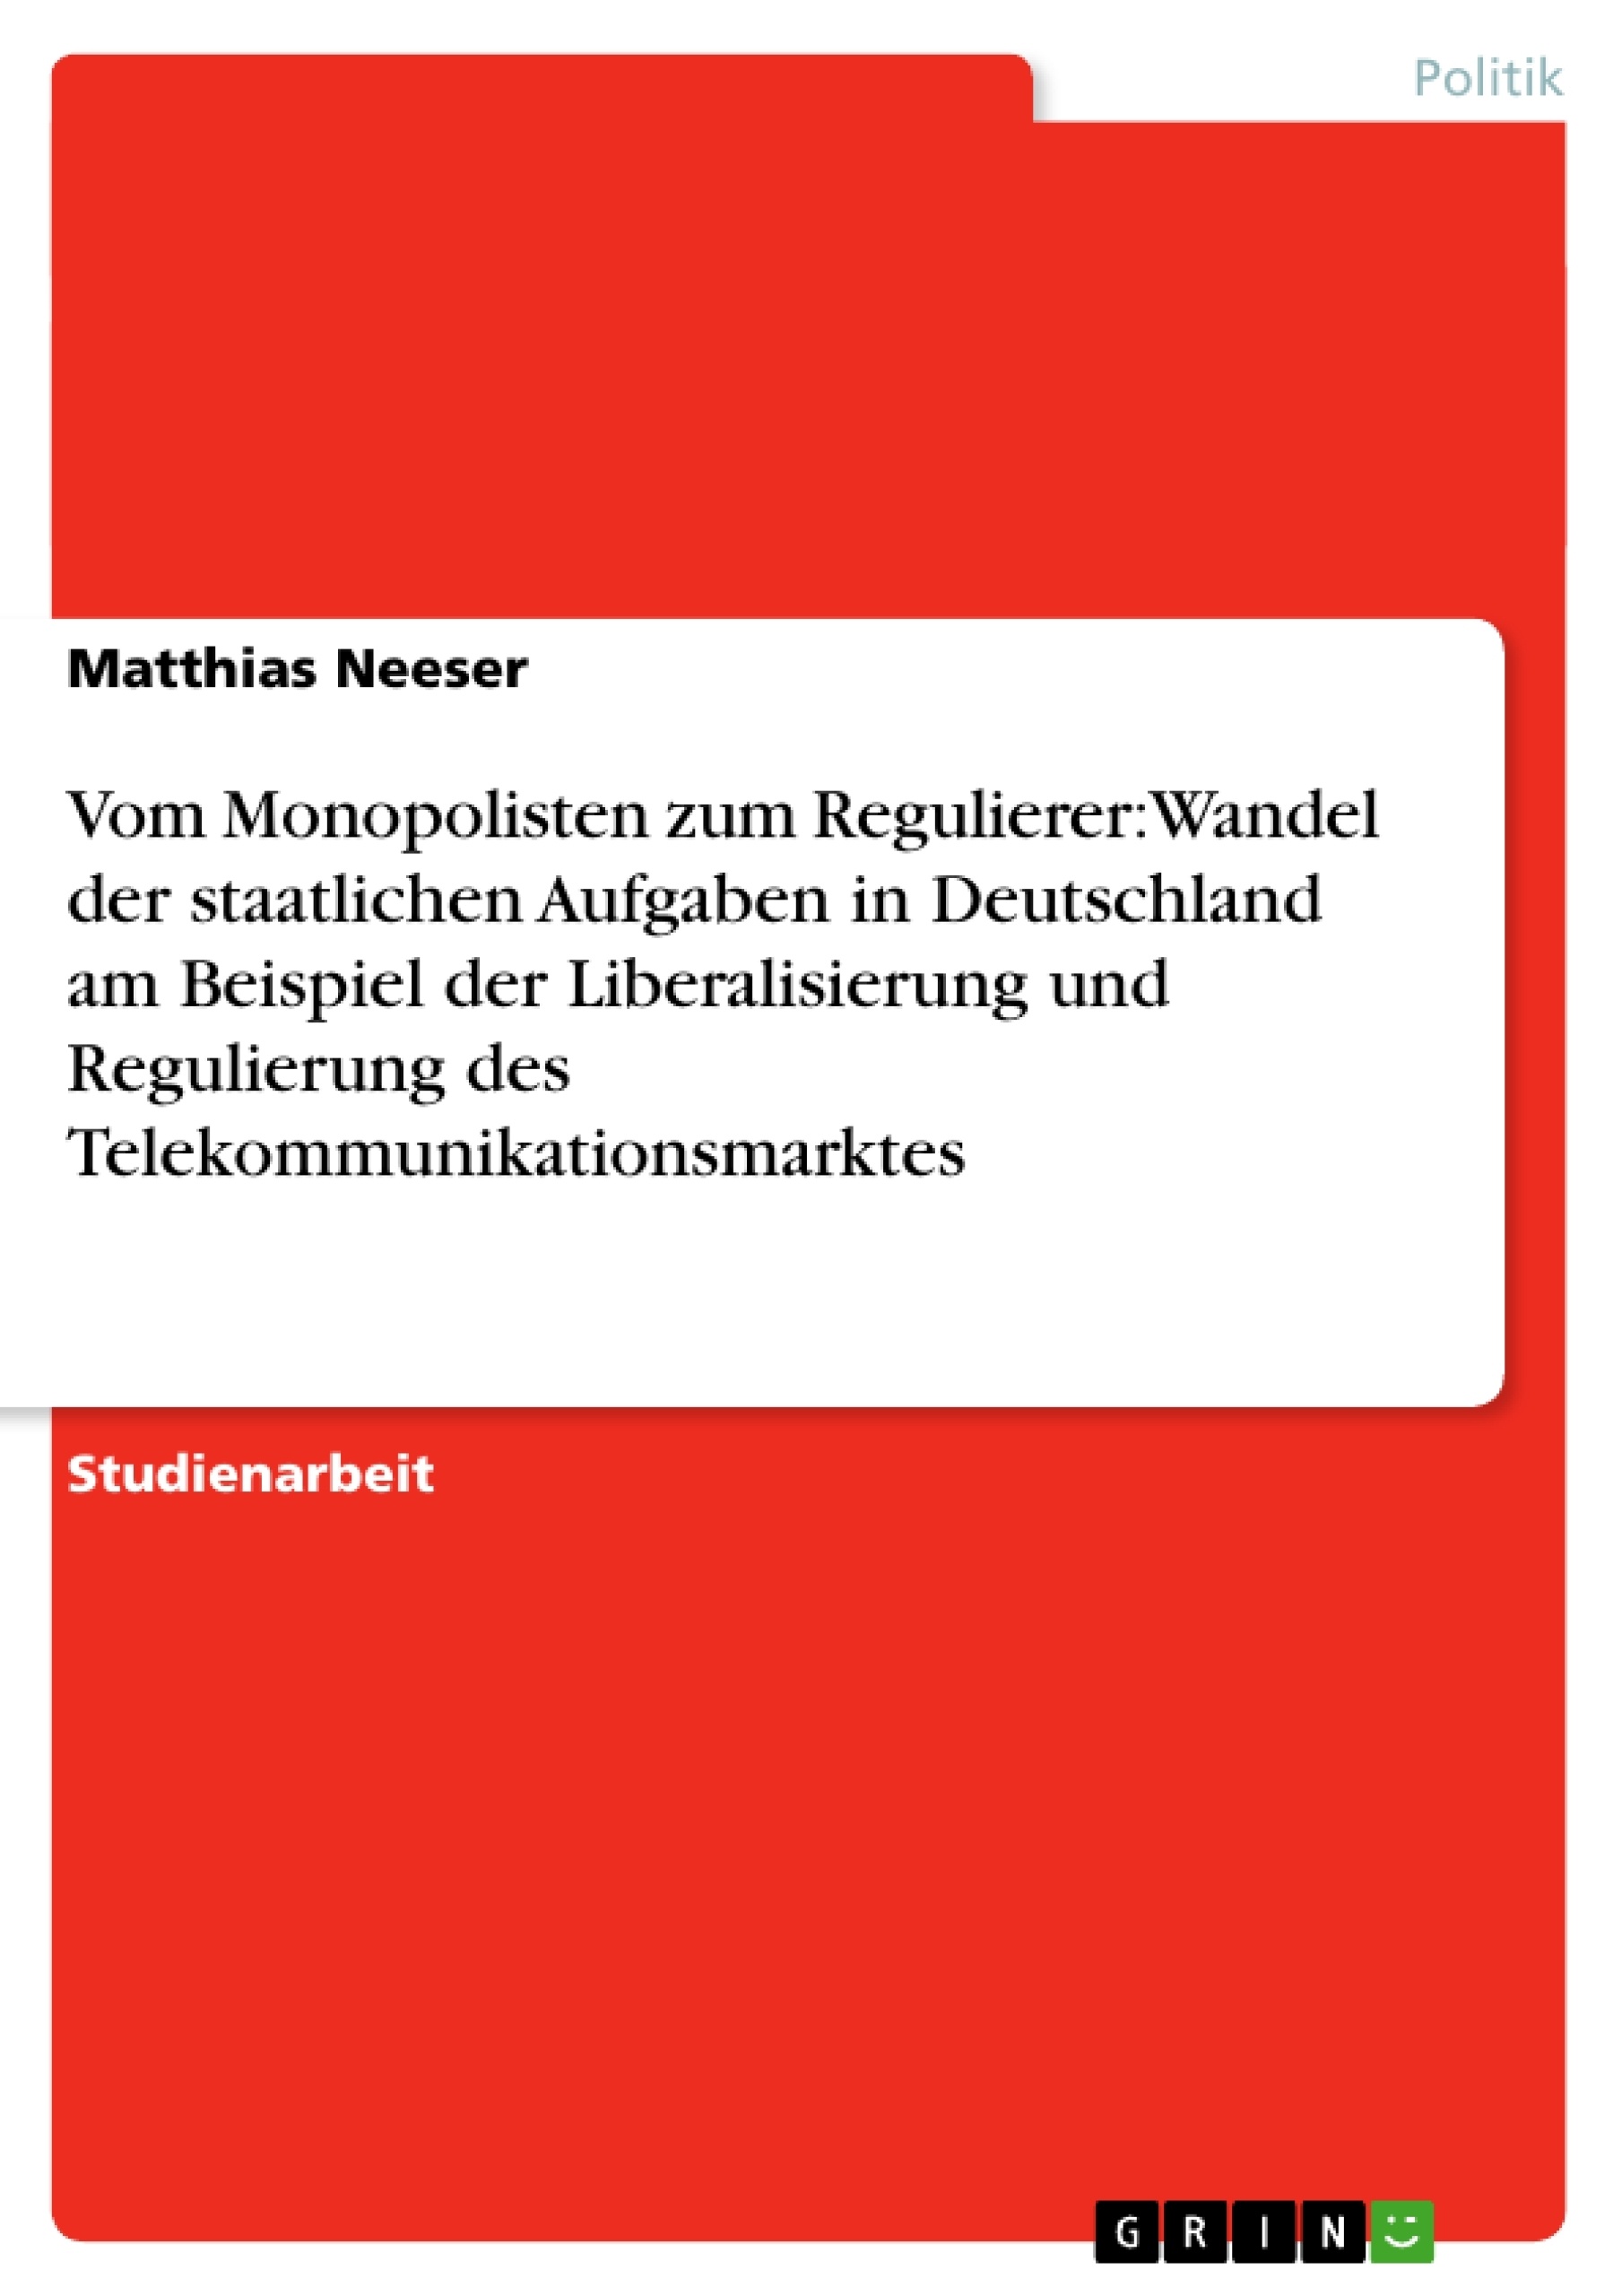 Titel: Vom Monopolisten zum Regulierer: Wandel der staatlichen Aufgaben in Deutschland am Beispiel der Liberalisierung und Regulierung des Telekommunikationsmarktes